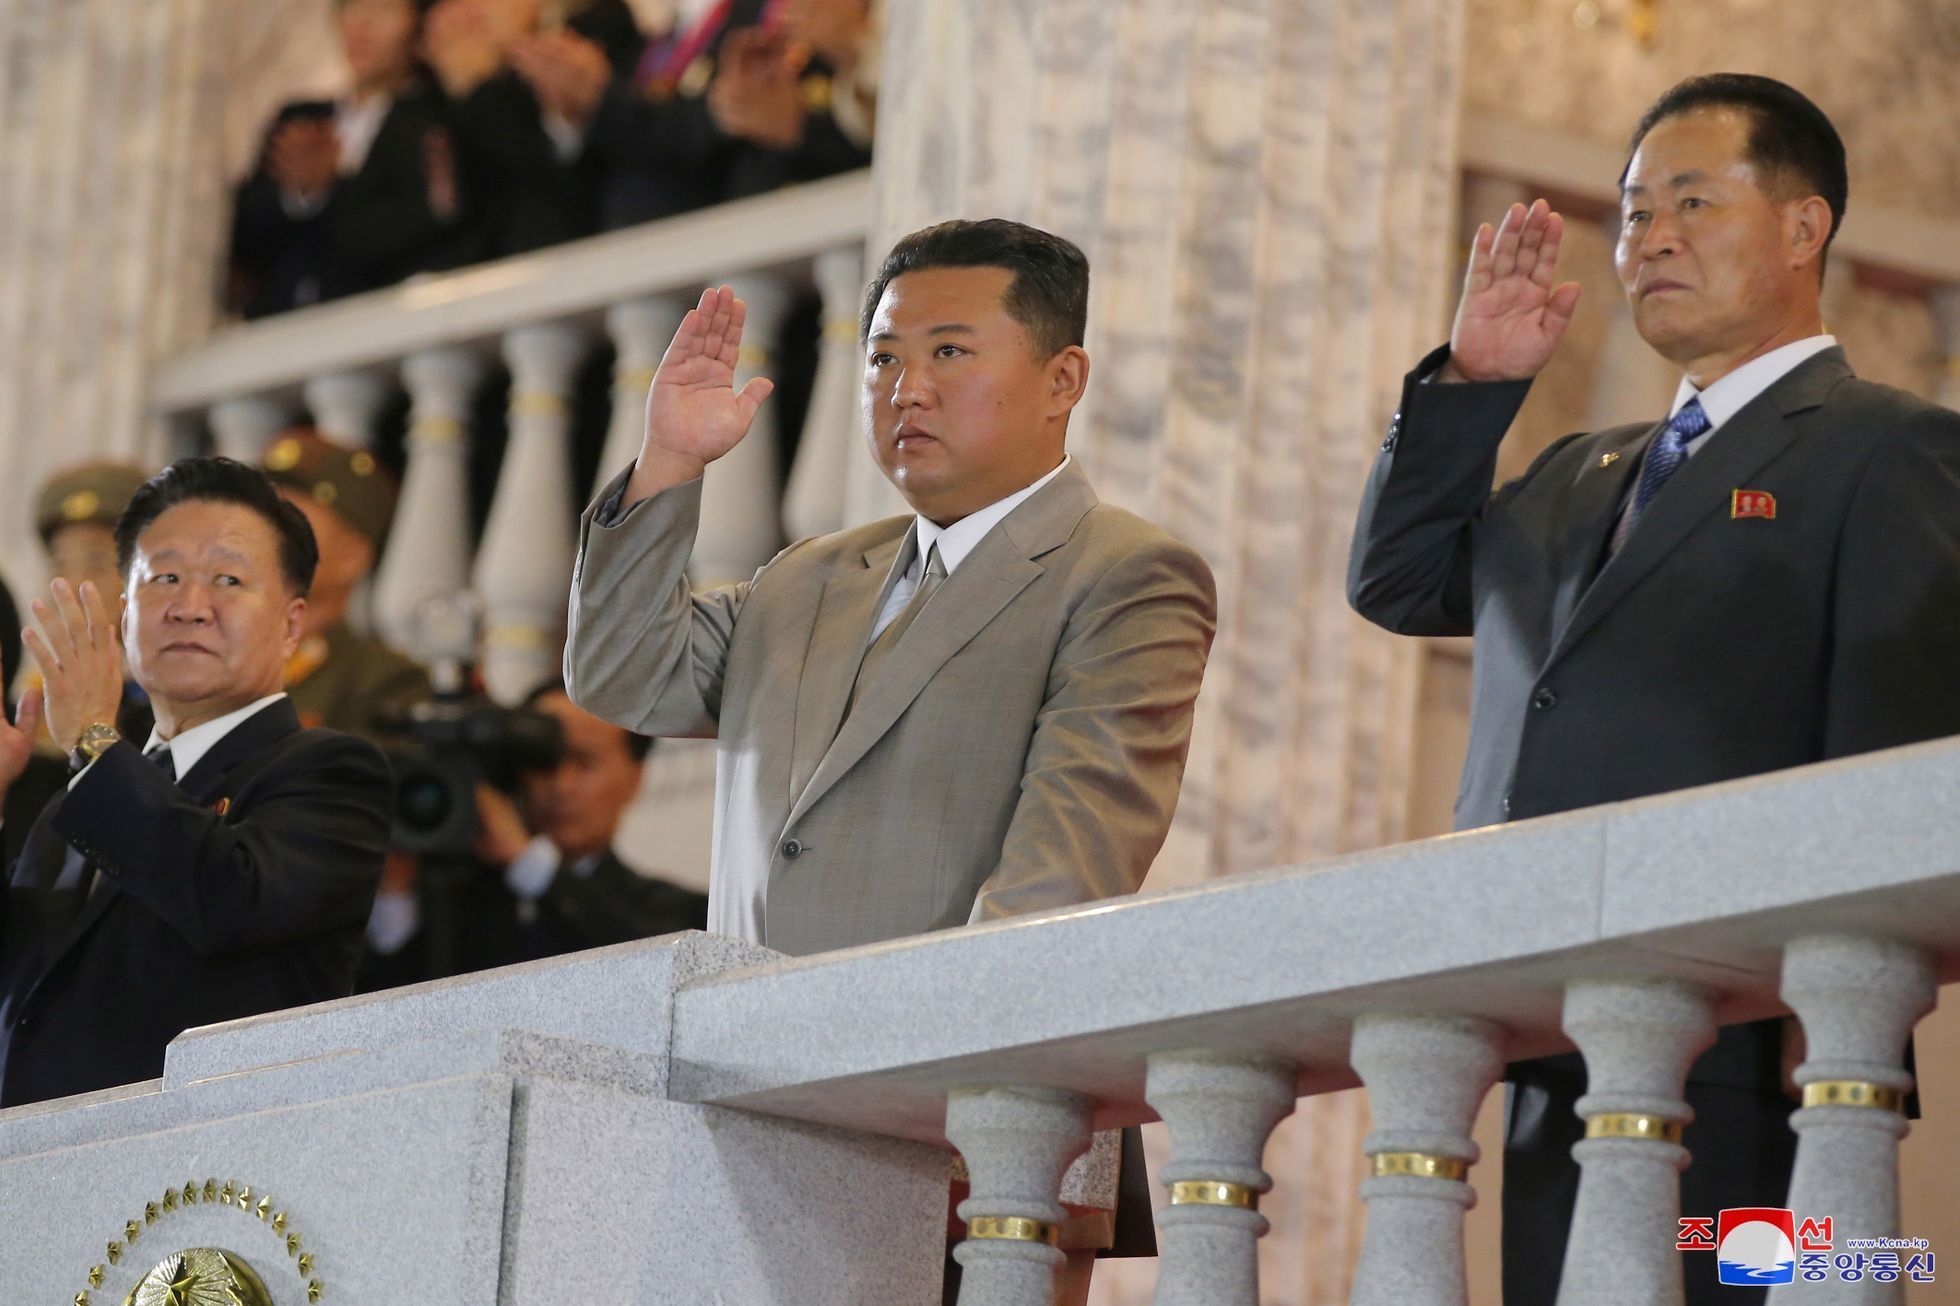 Z tlustého diktátora štíhlý švihák. Proměna Kim Čong-una zaráží svět.